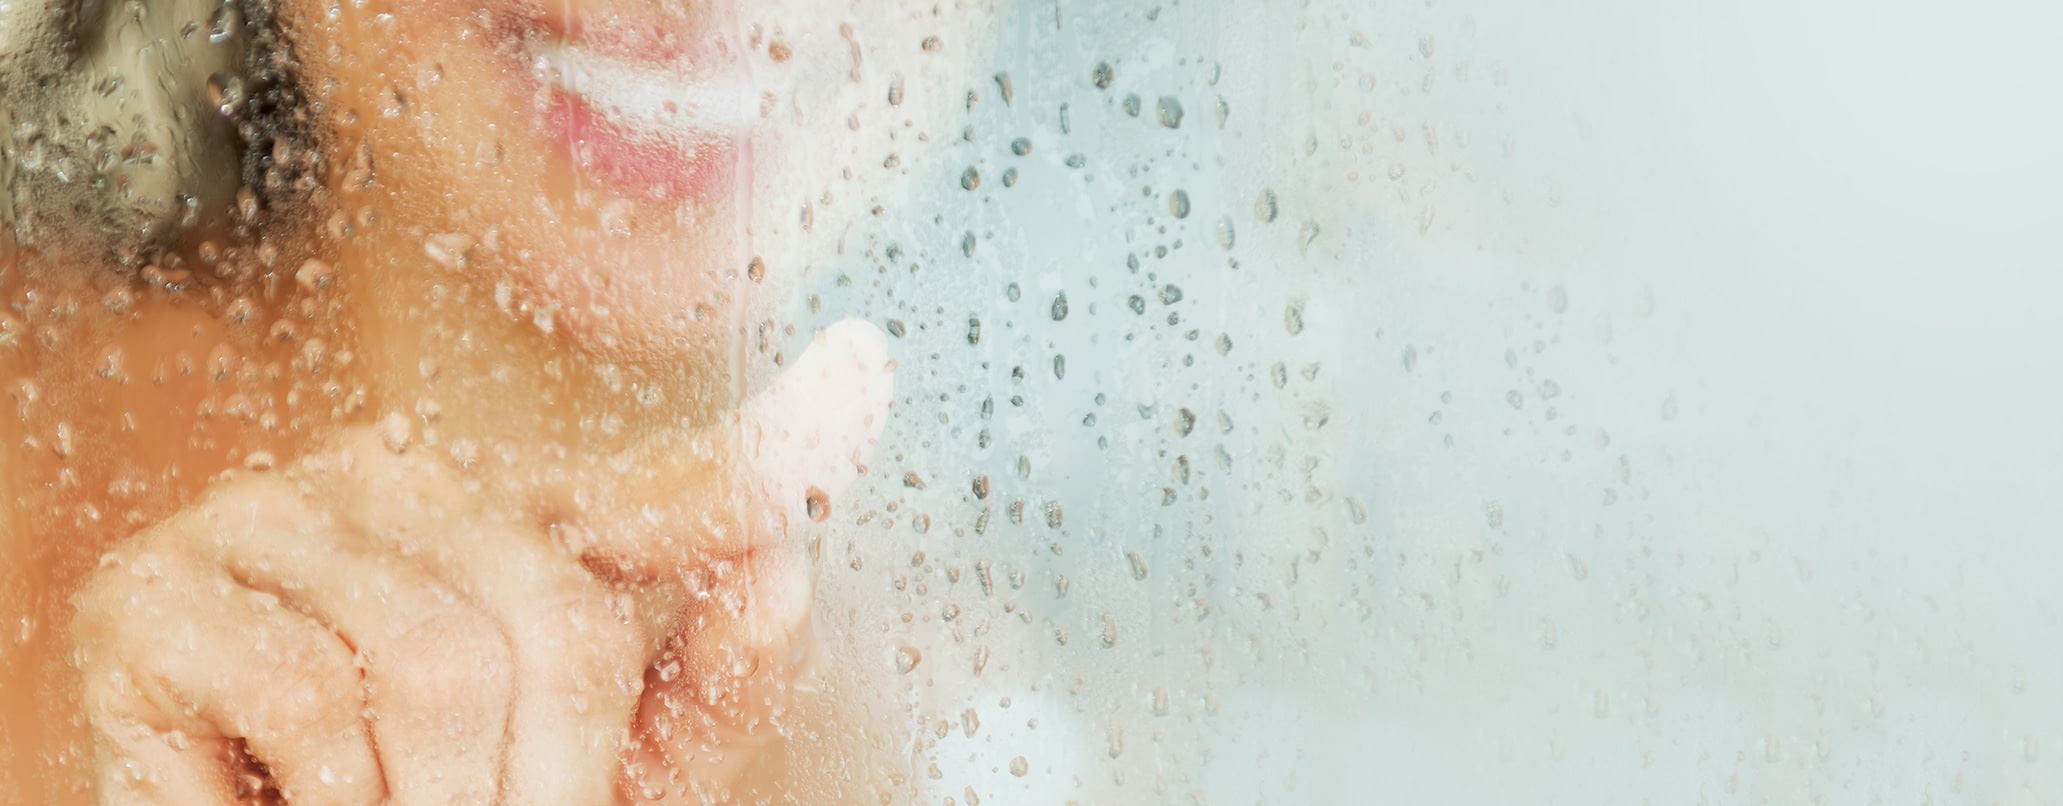 woman-behind-glass-shower-door-header